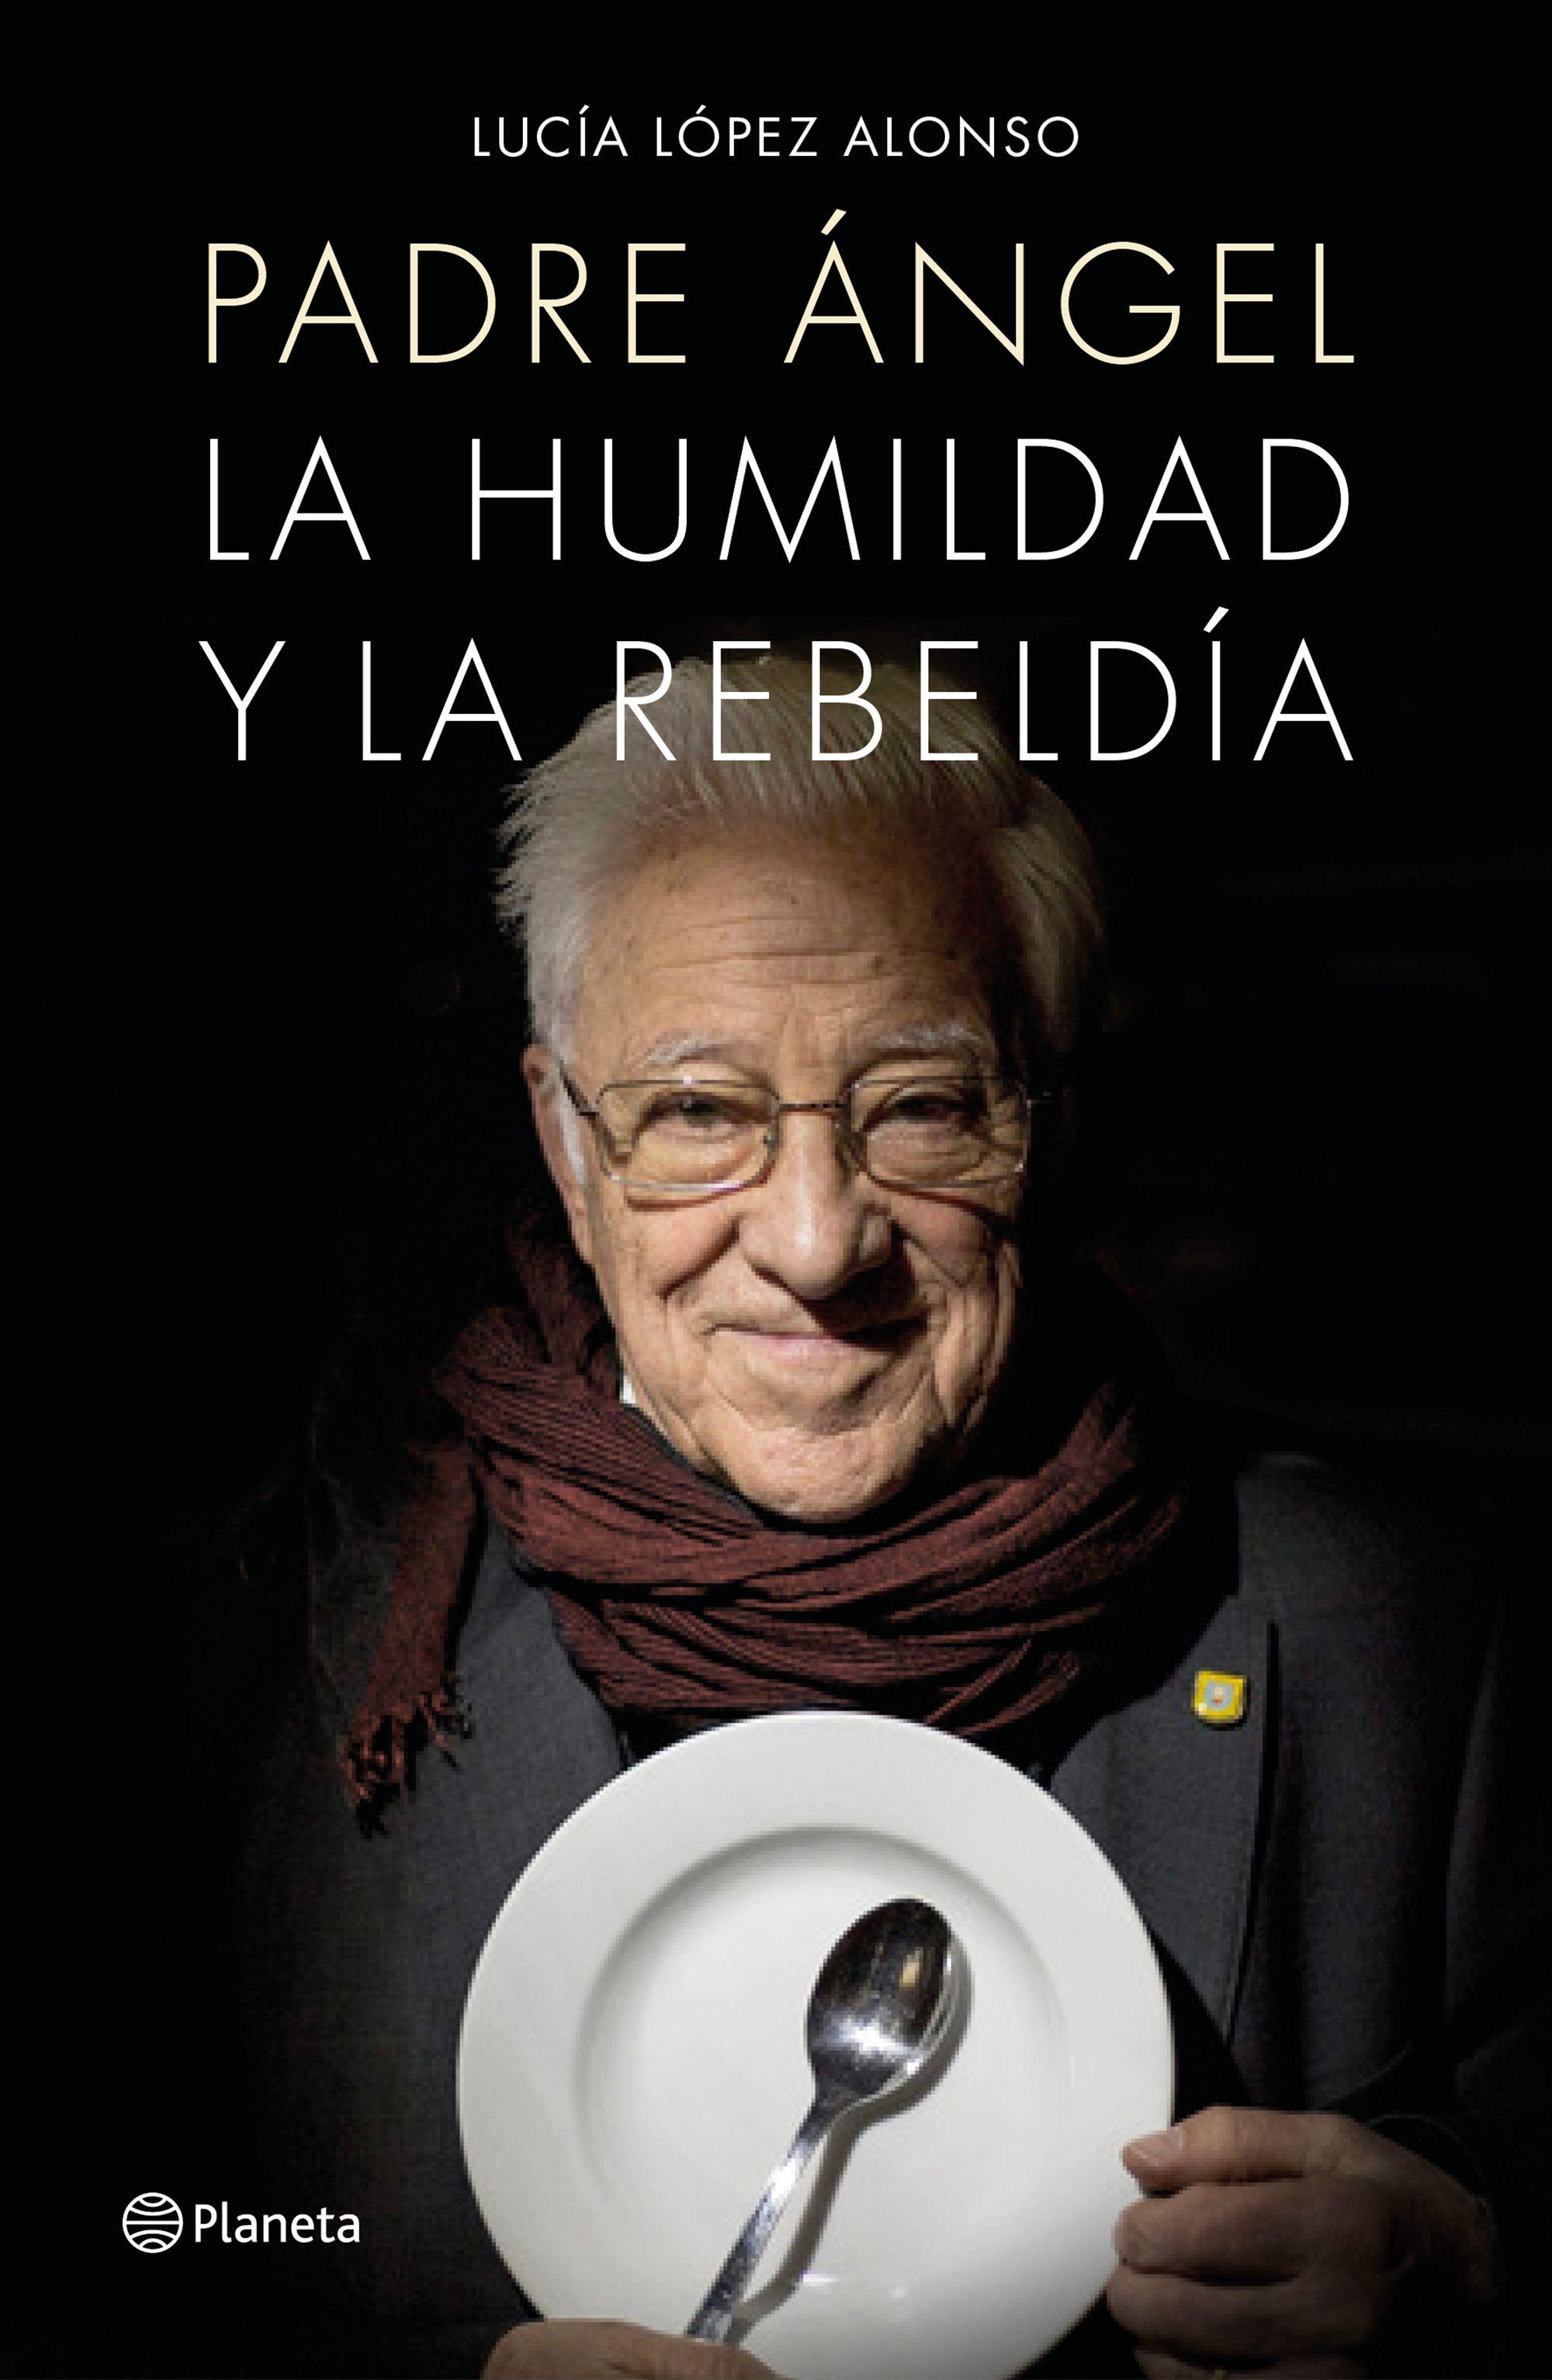 Padre Ángel "La Humildad y la Rebeldía"